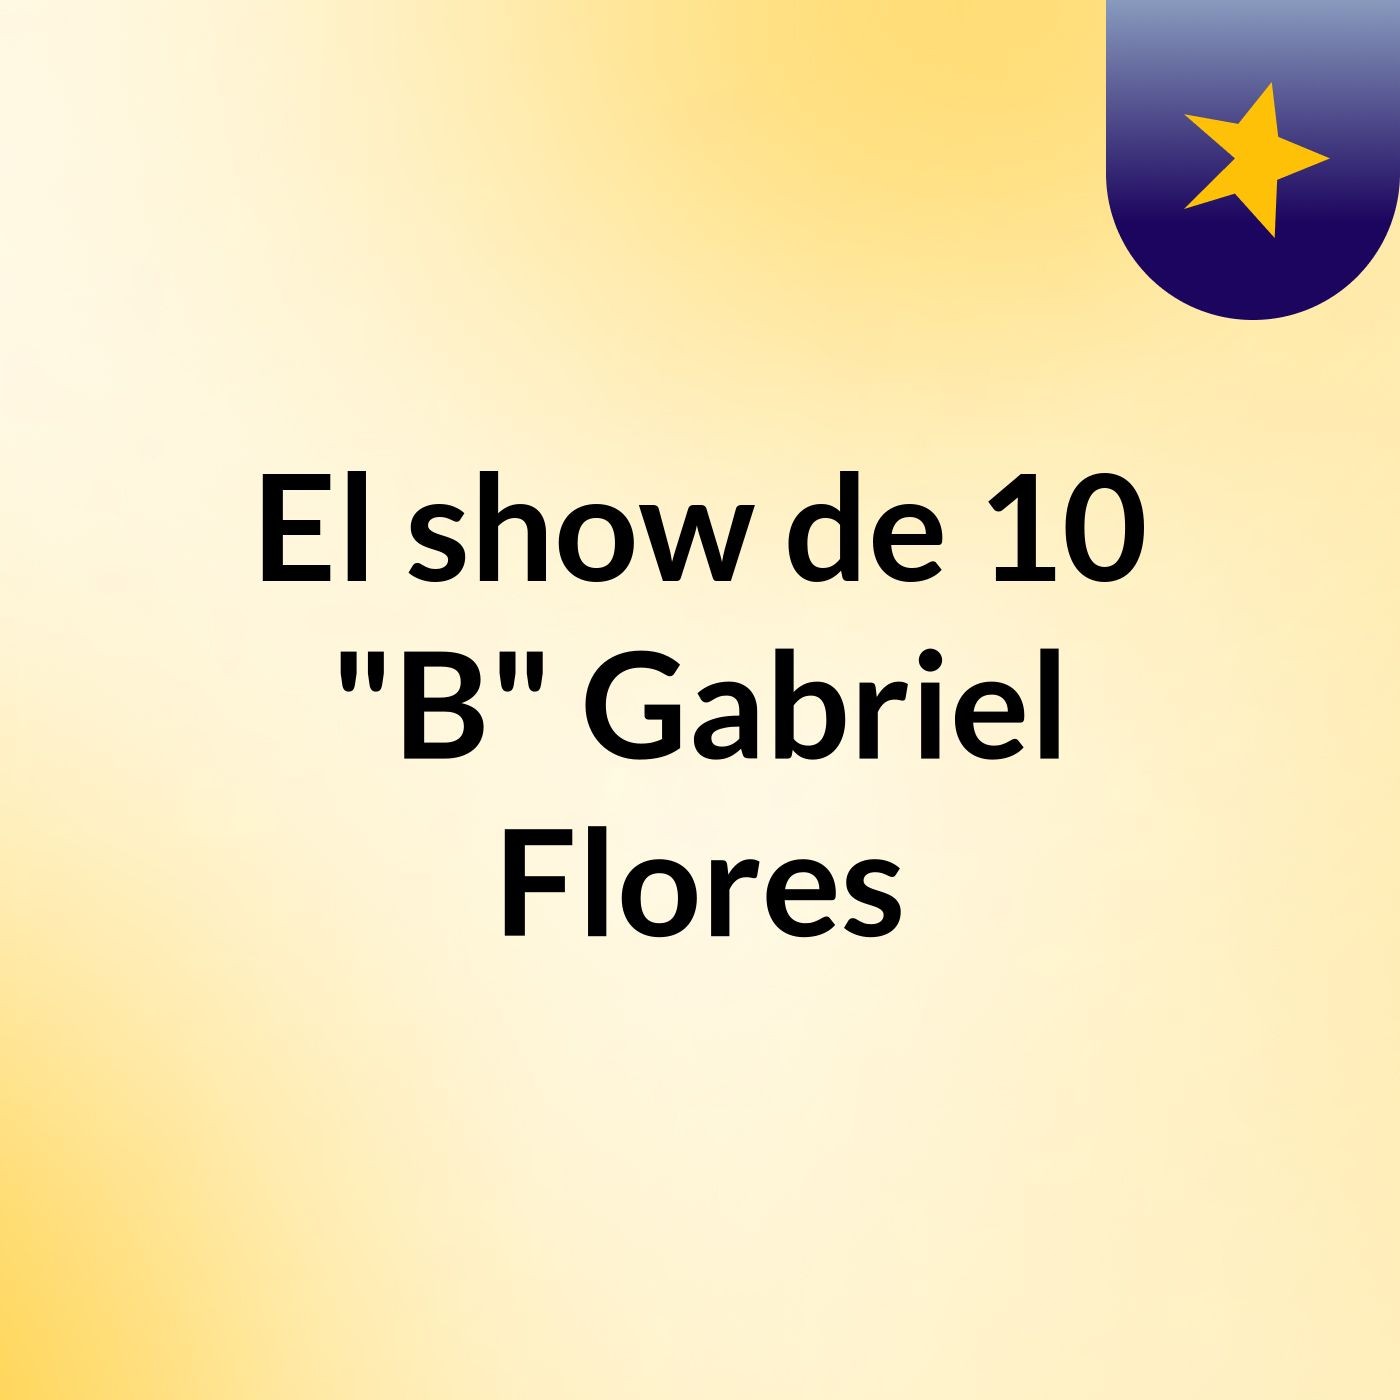 El show de 10 "B" Gabriel Flores